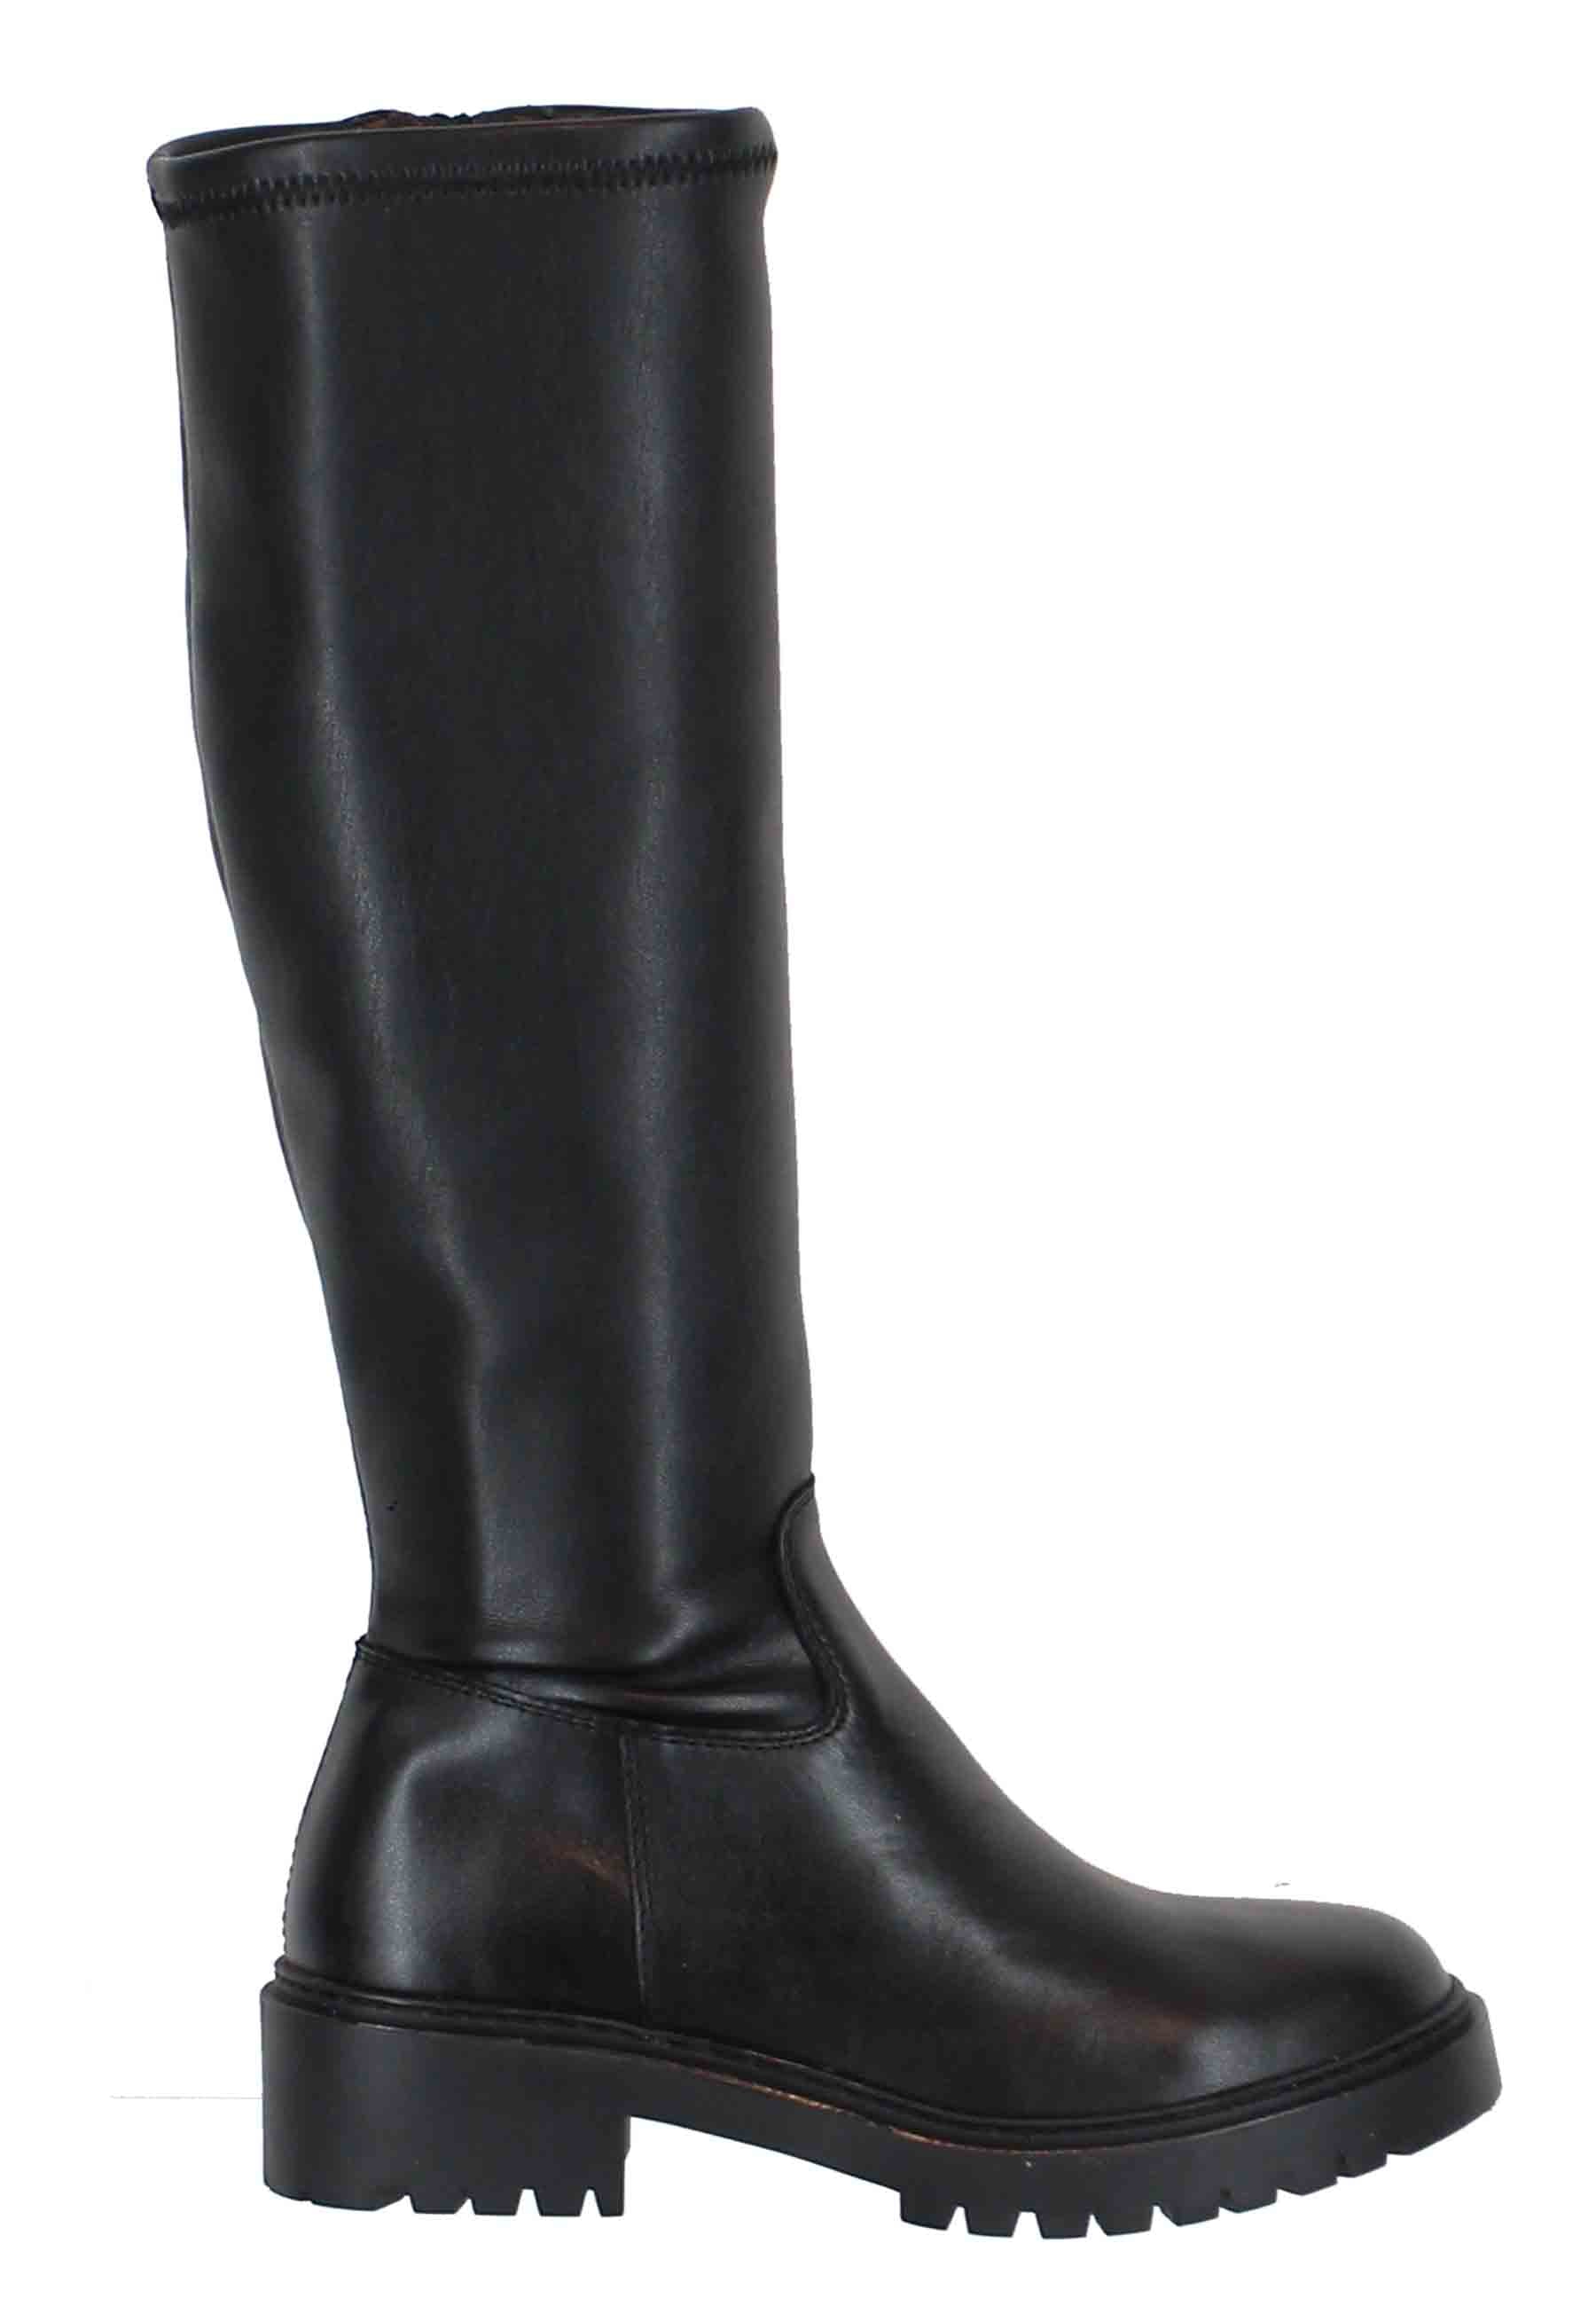 Boots femme en cuir noir à semelle crantée et bout rond